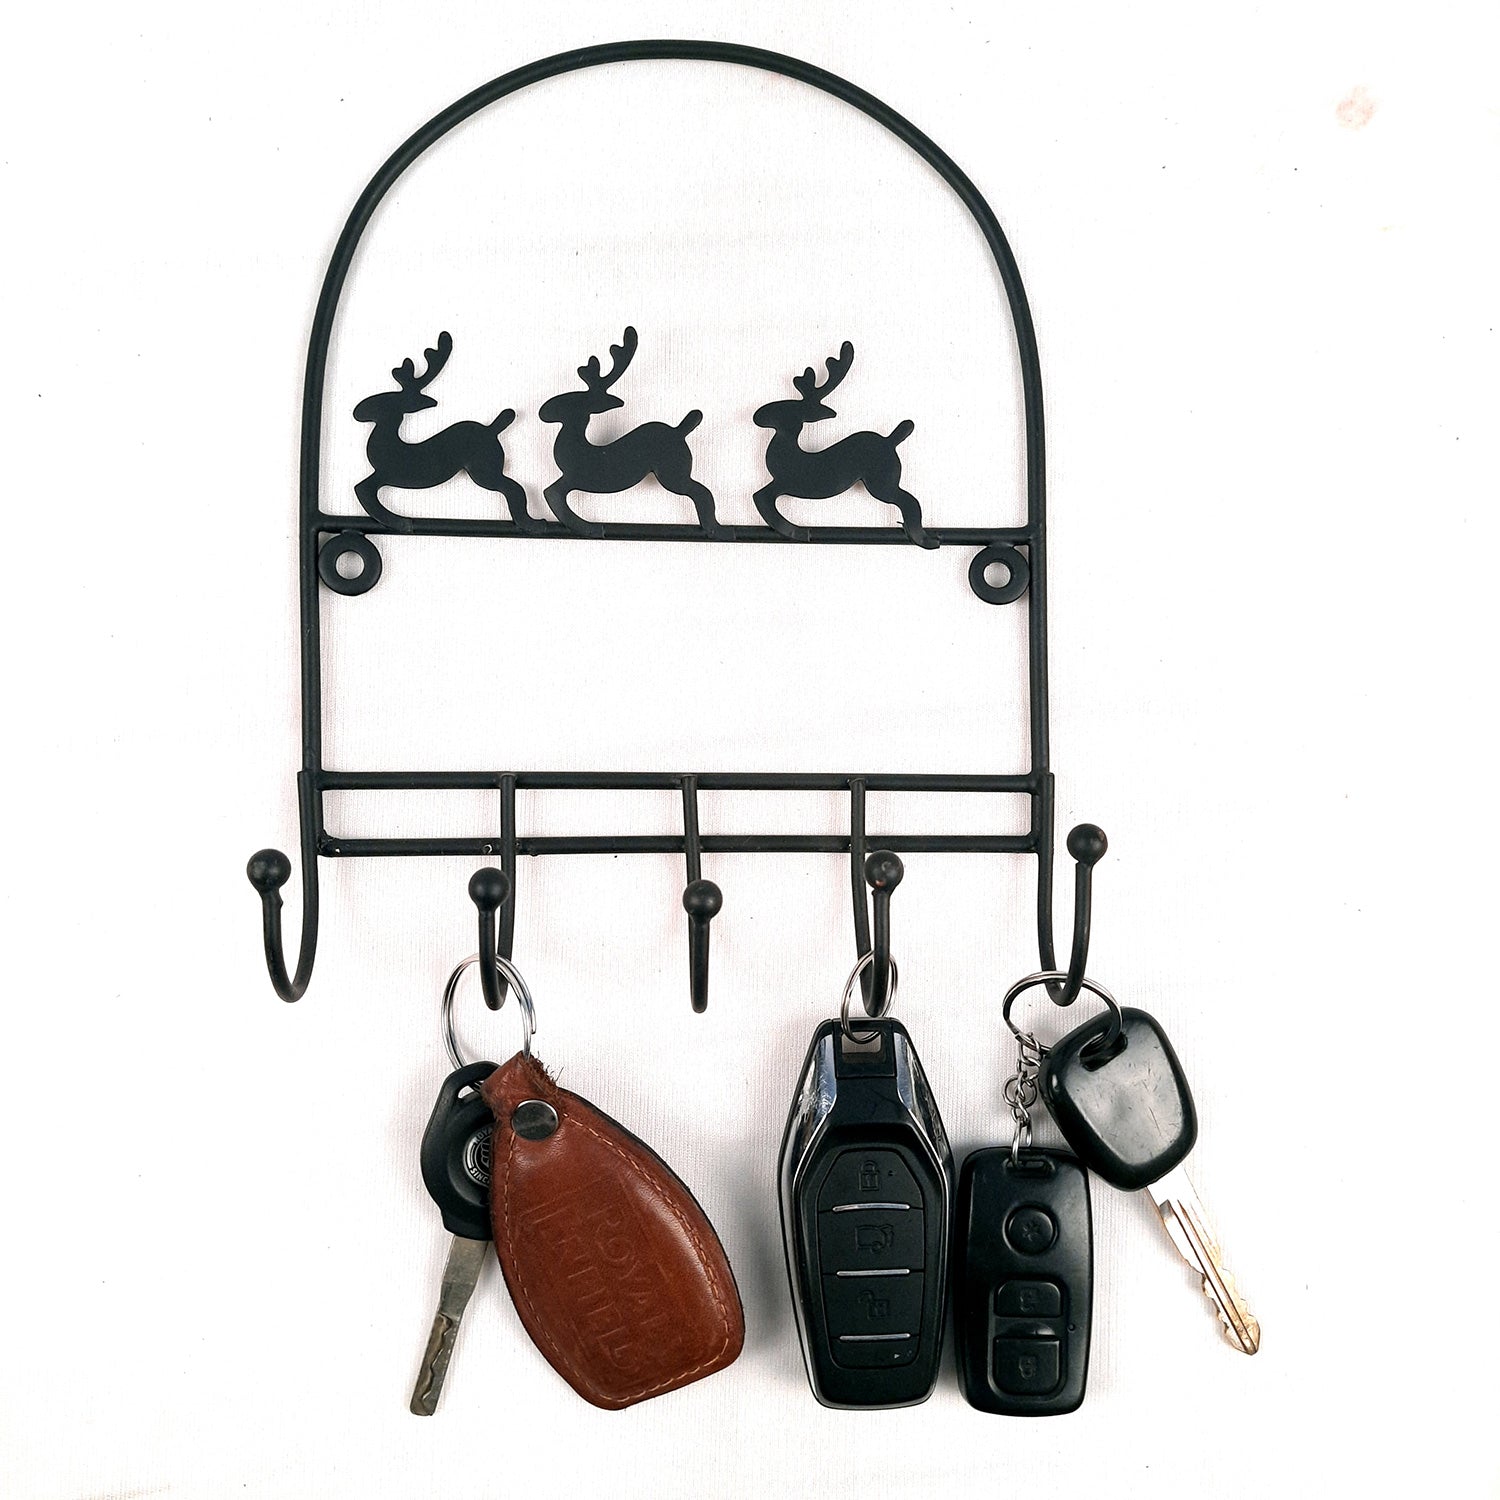 Key Holder Stands | Keys Hook Wall Hangers - Reindeer Design | Keys Organizer - For Home, Entrance, Office Decor & Gifts - 9 Inch (5 Hooks) - Apkamart #Style_Pack of 2